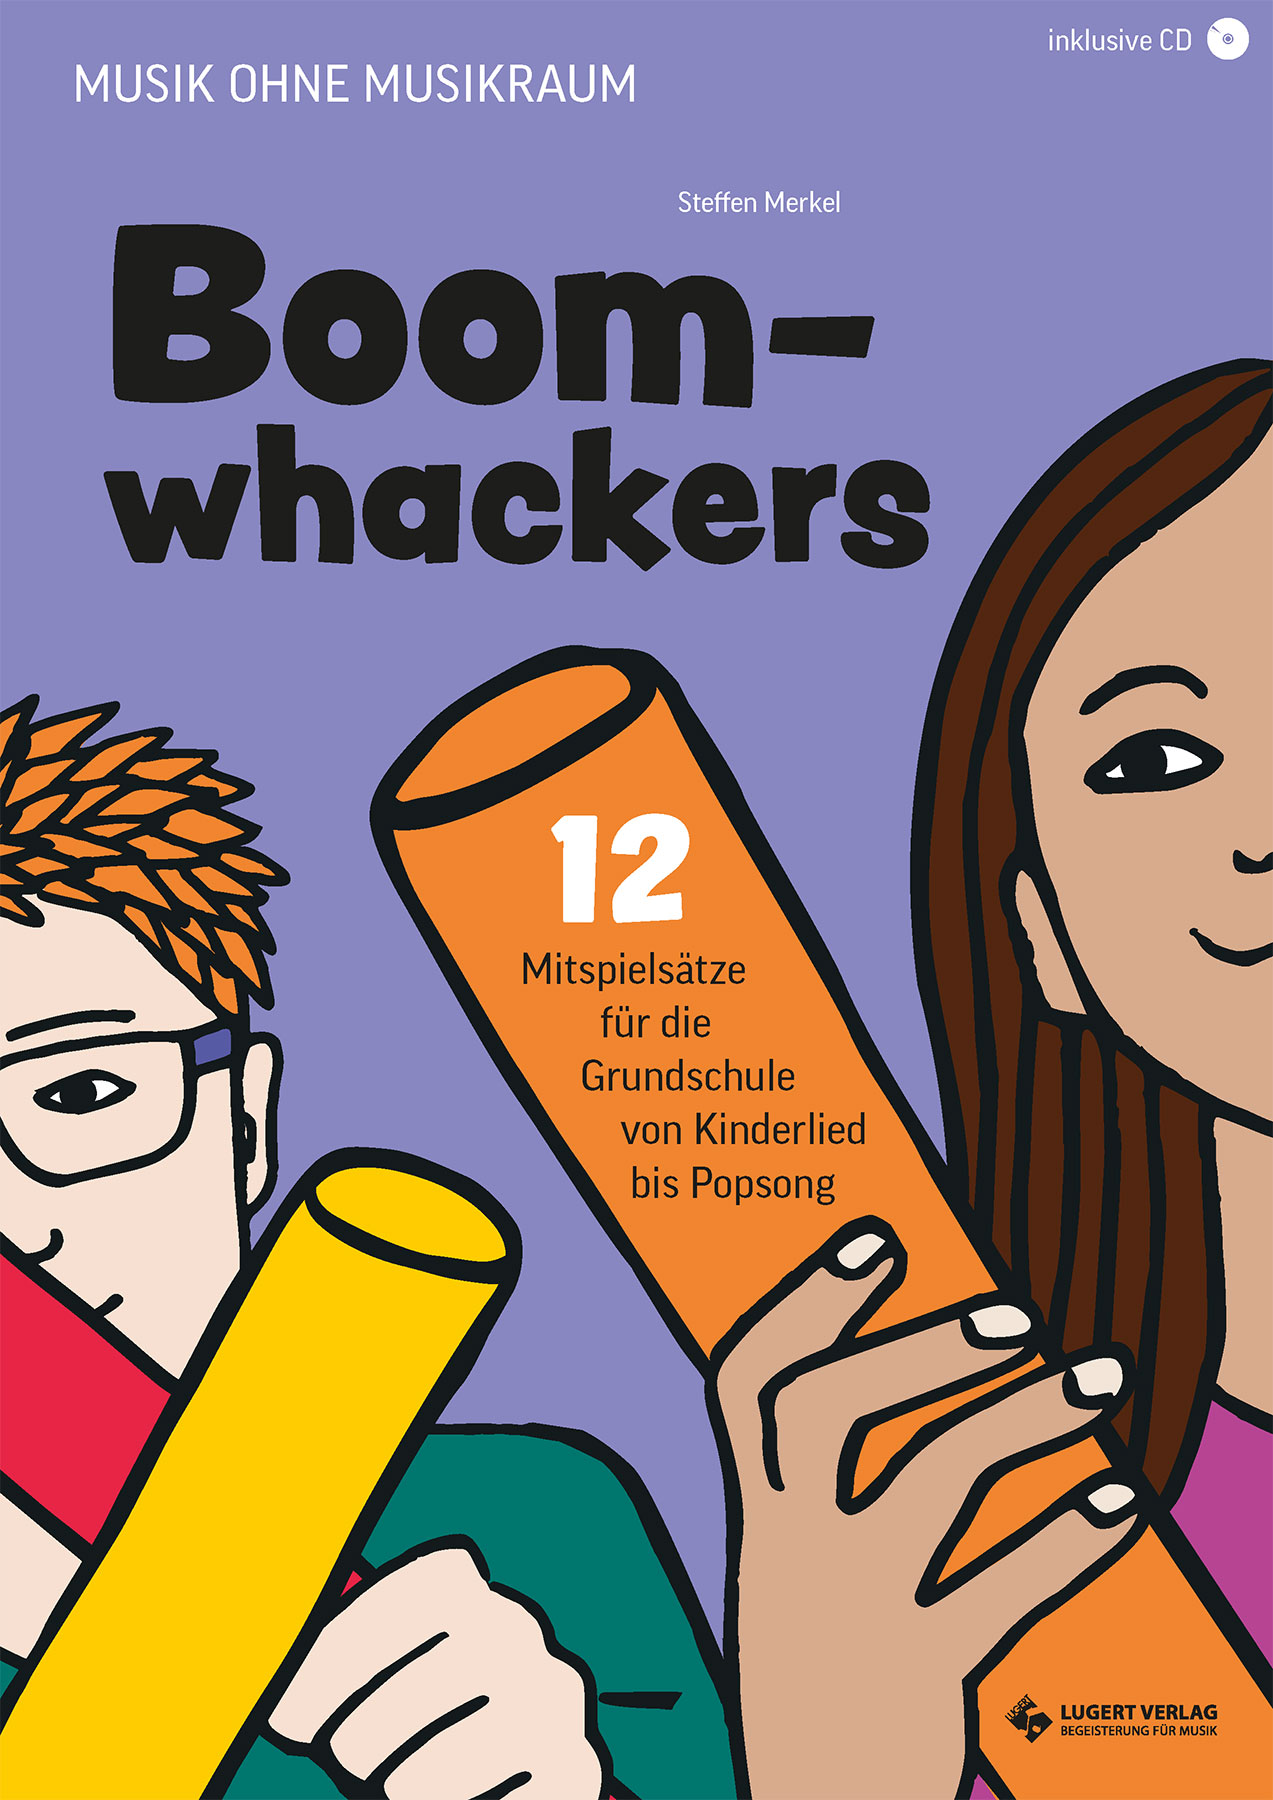 Boomwhackers - 12 Mitspielsätze für die Grundschule 1